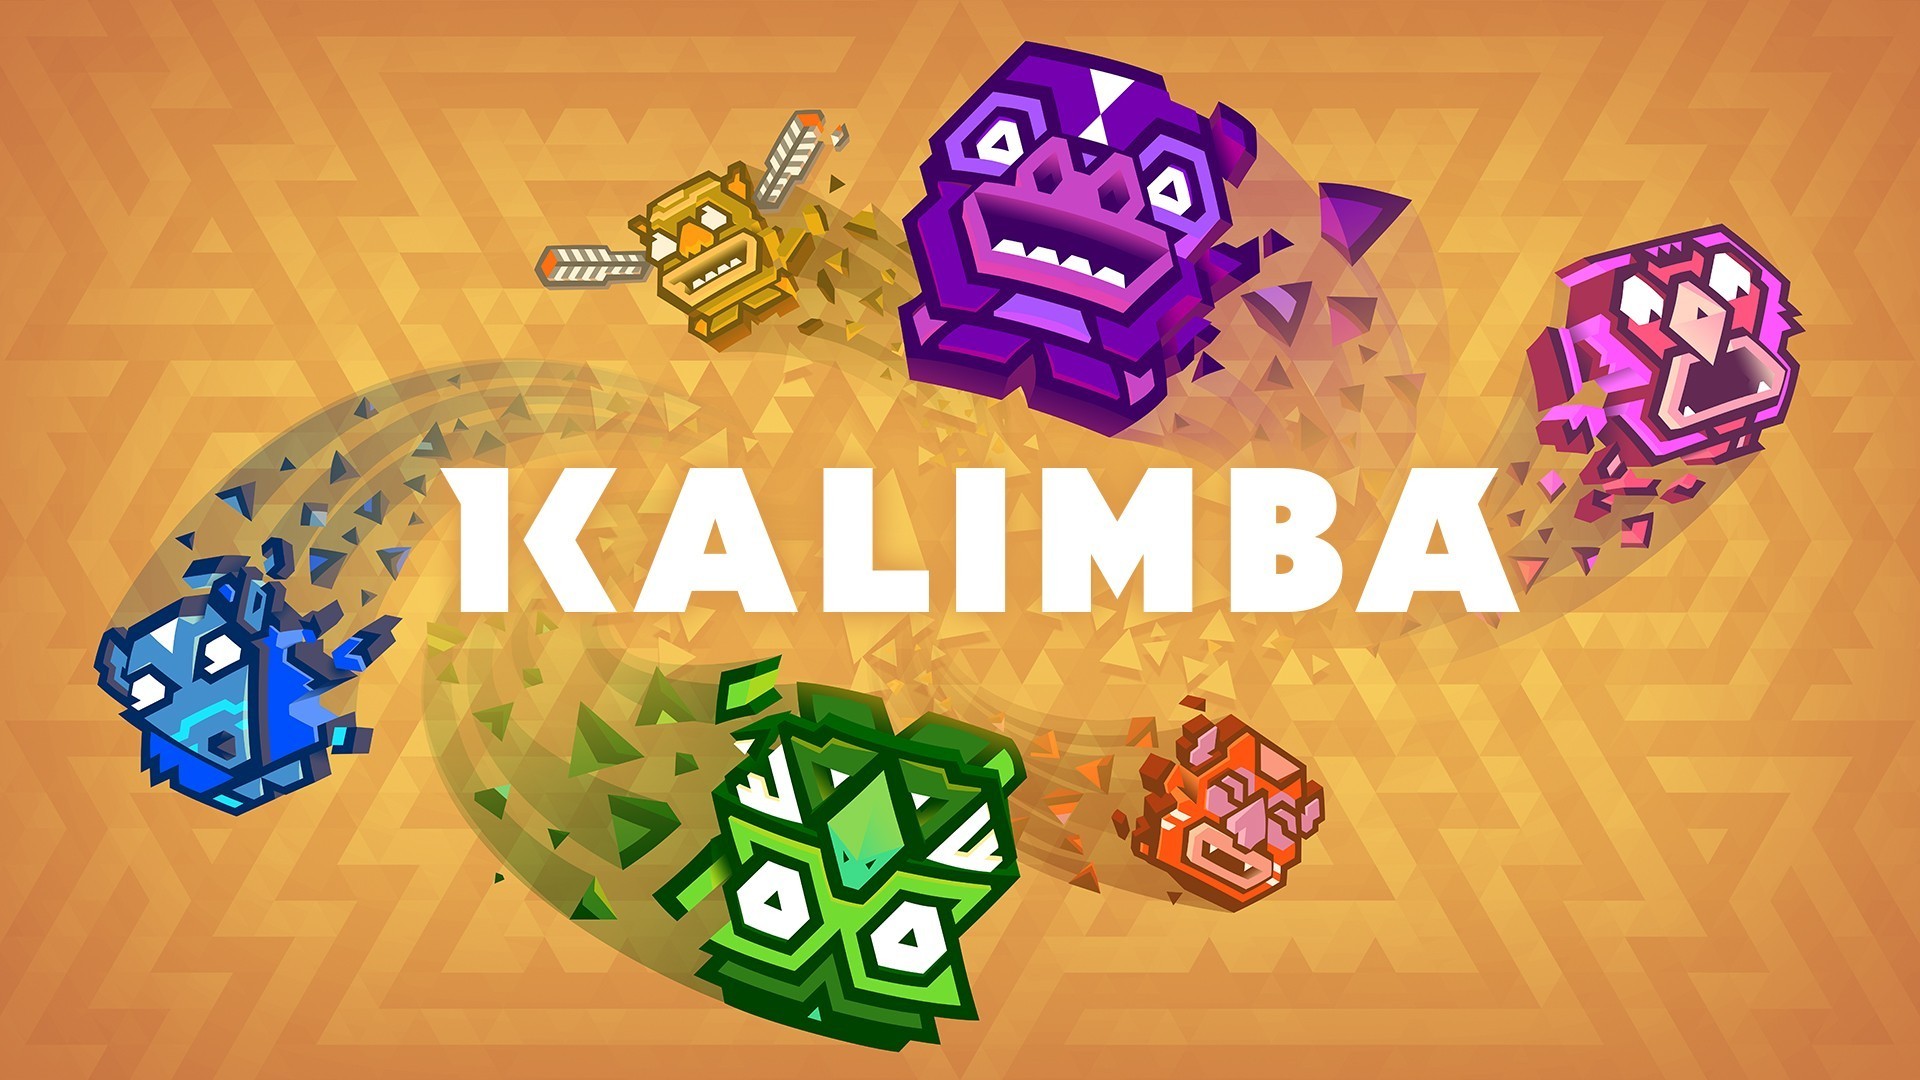 Kalimba, Video Games Wallpaper